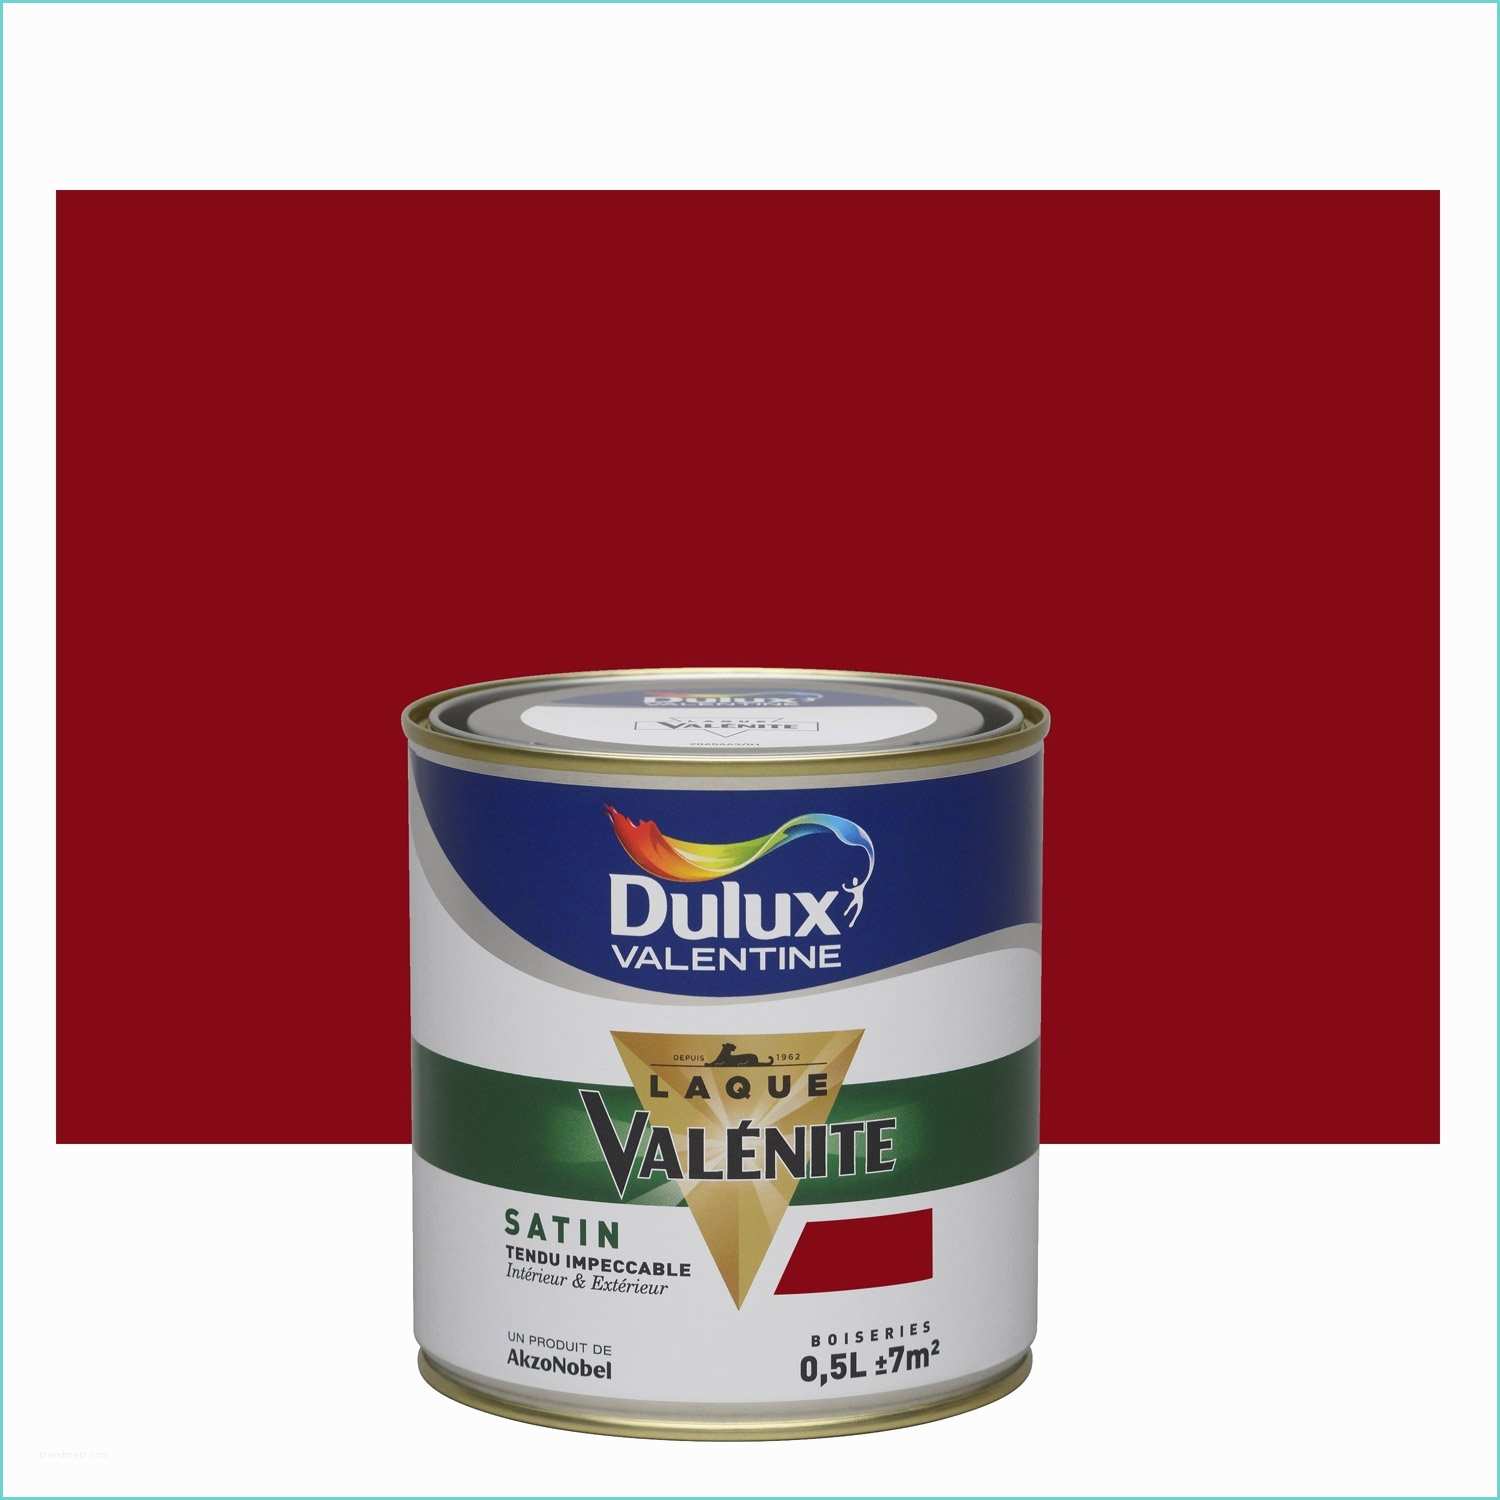 Leroy Merlin Dulux Peinture Rouge Basque Dulux Valentine Valénite 0 5 L